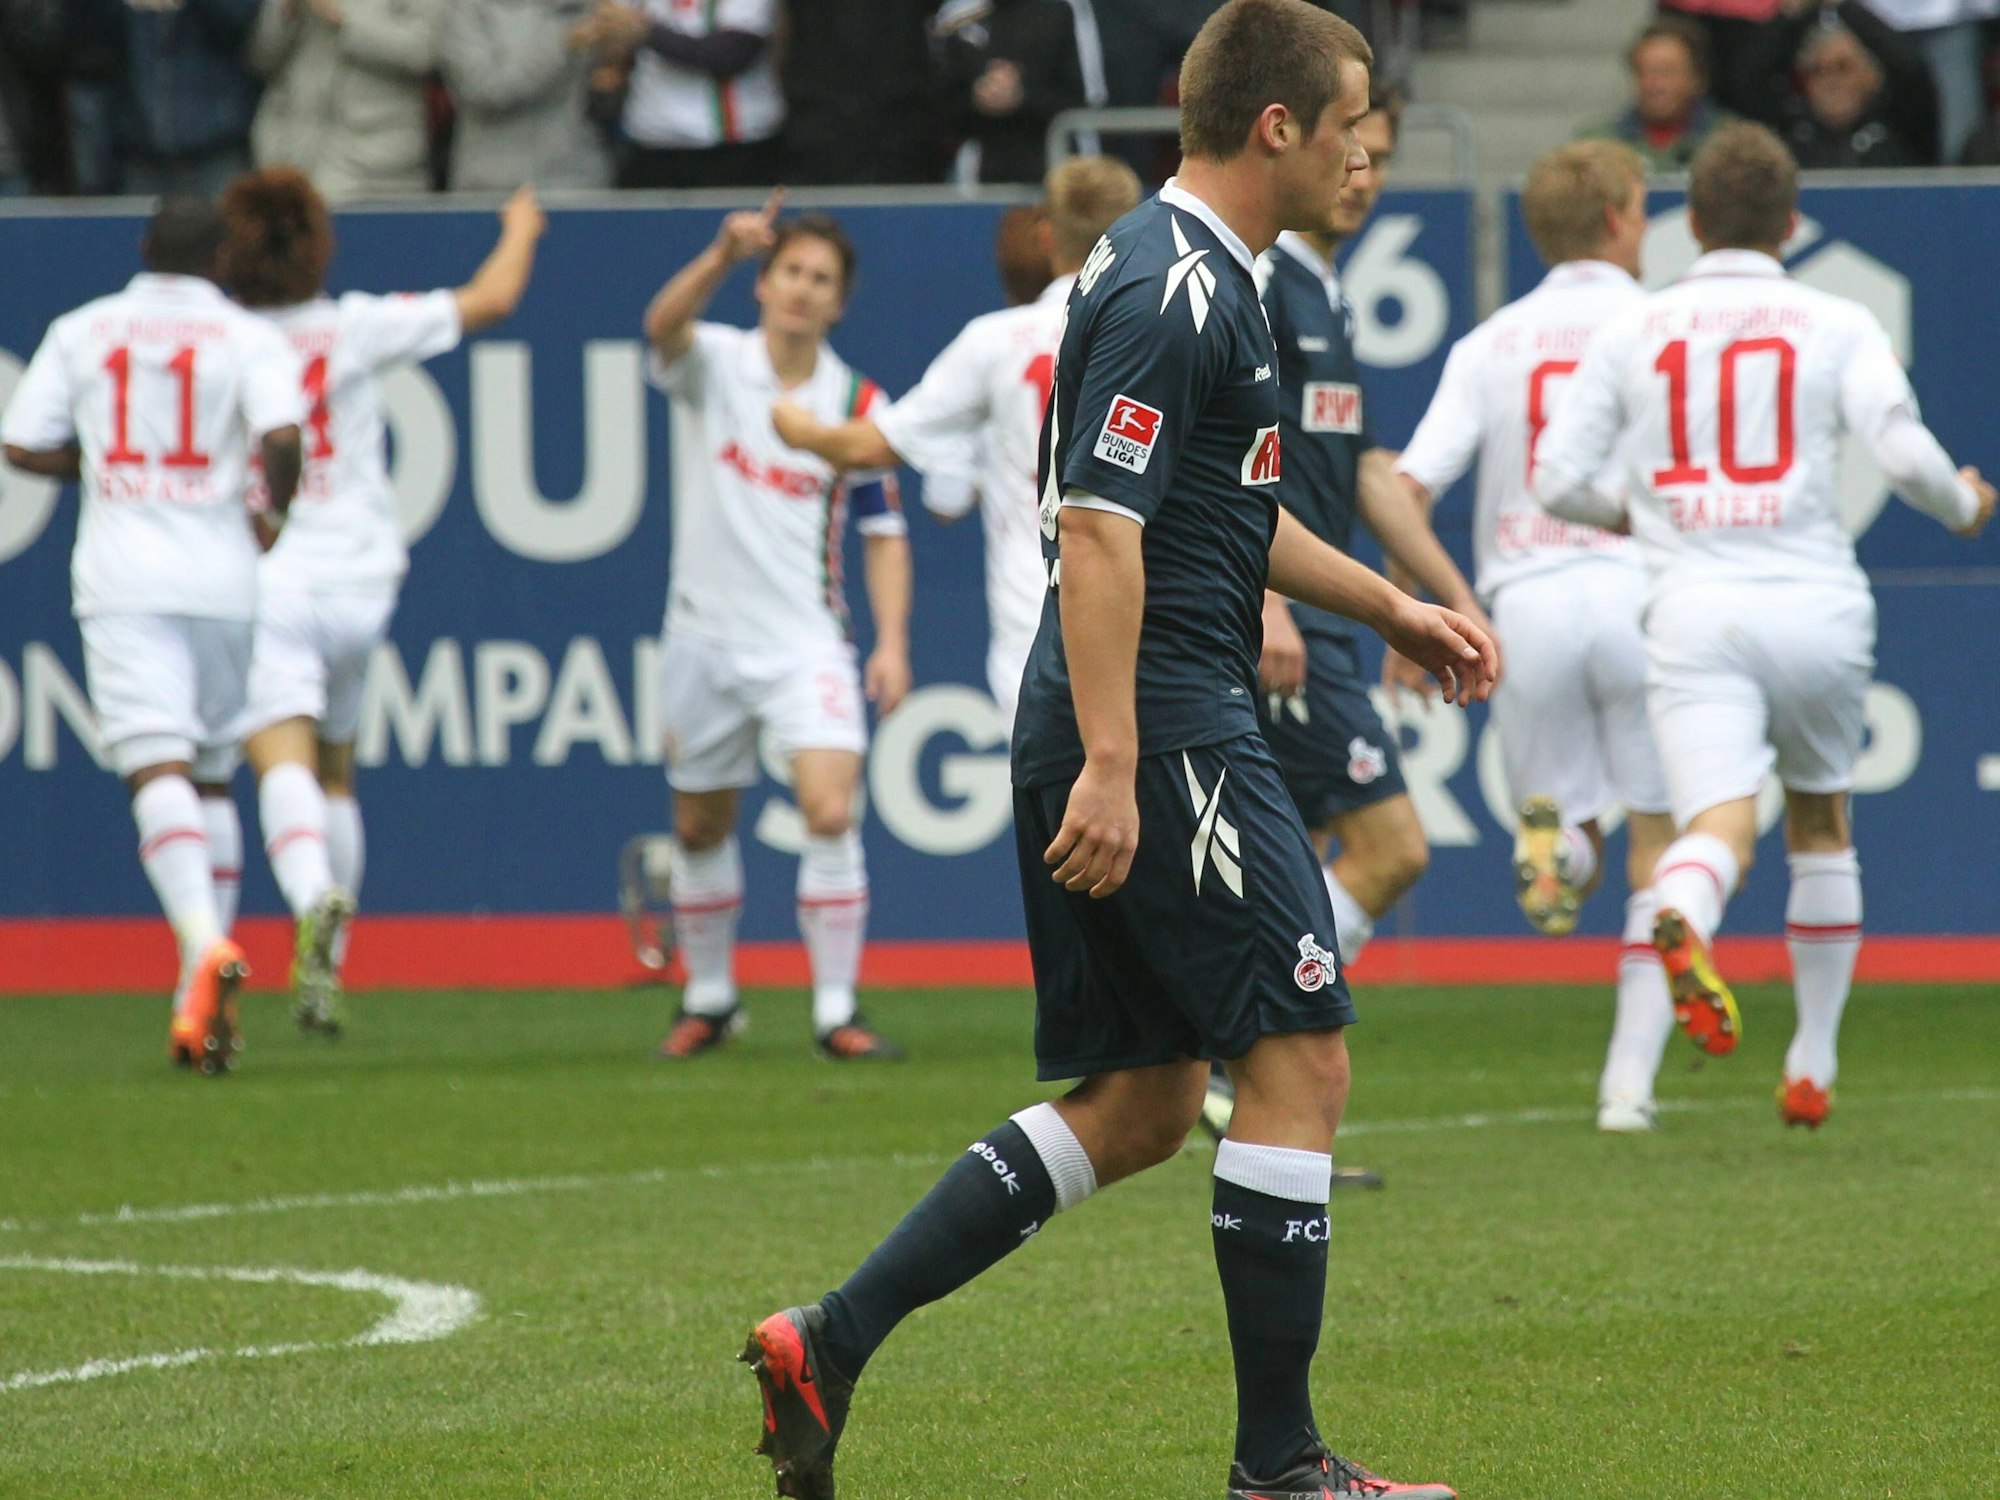 Frust bei Christian Clemens, während die Spieler des FC Augsburg im Hintergrund jubeln.